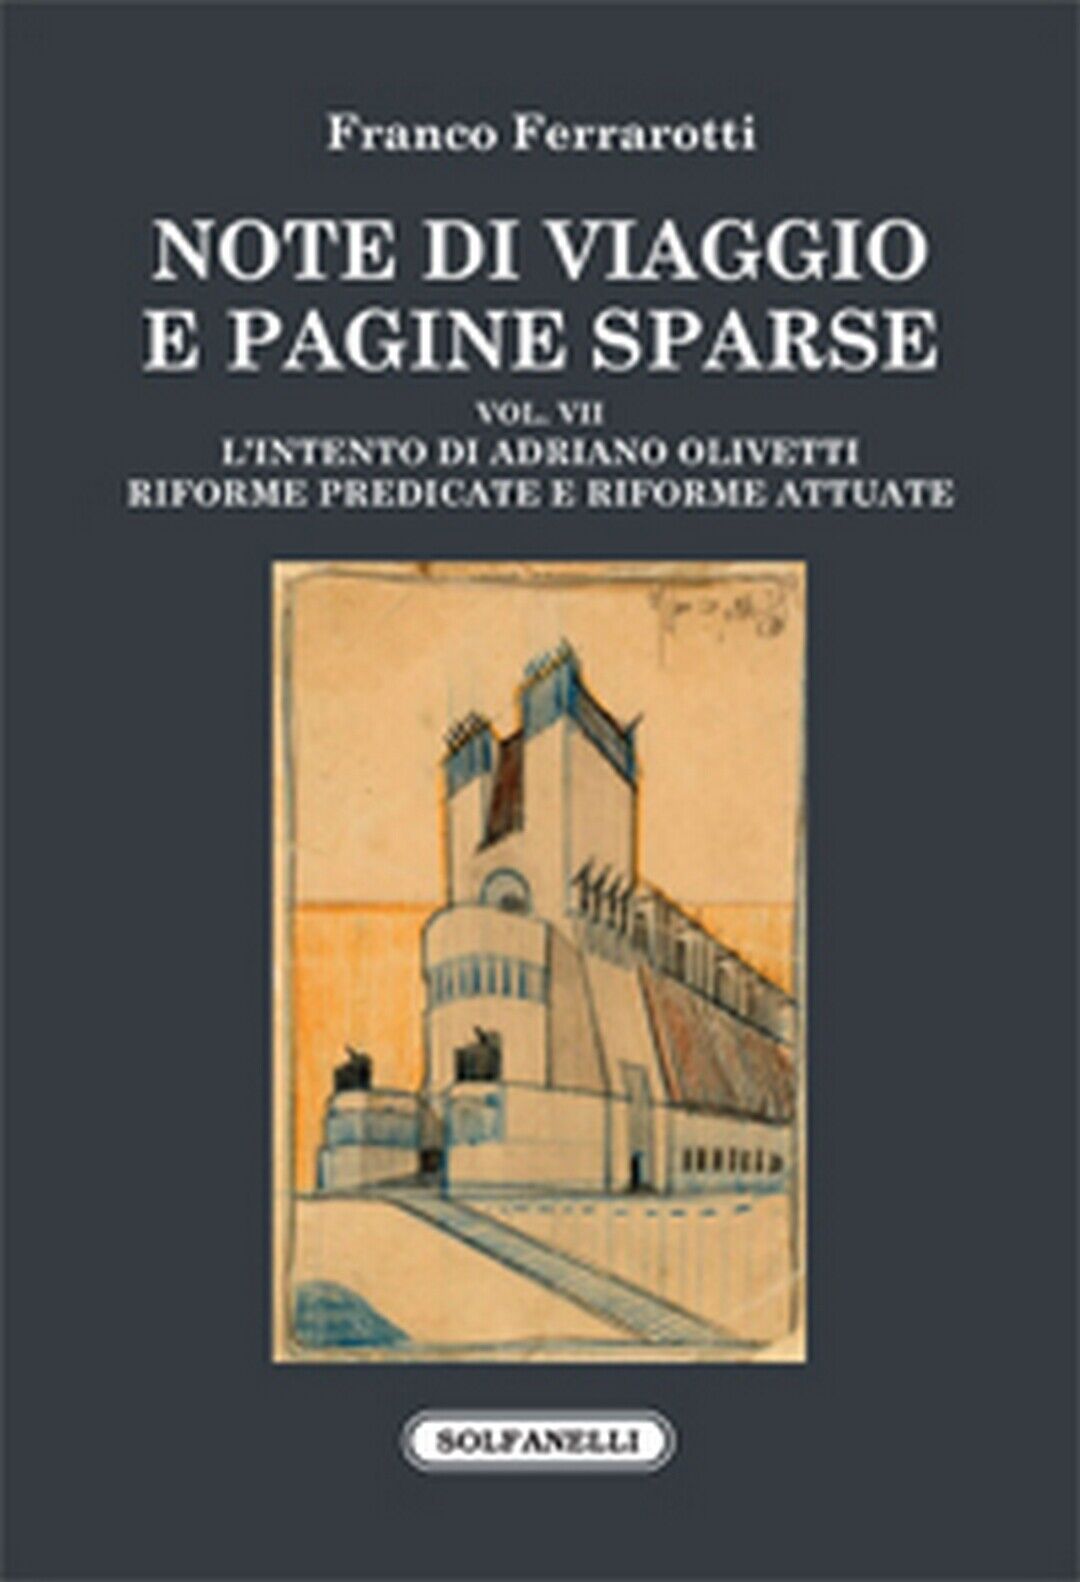 NOTE DI VIAGGIO E PAGINE SPARSE Vol. VII  di Franco Ferrarotti,  Solfanelli Ediz